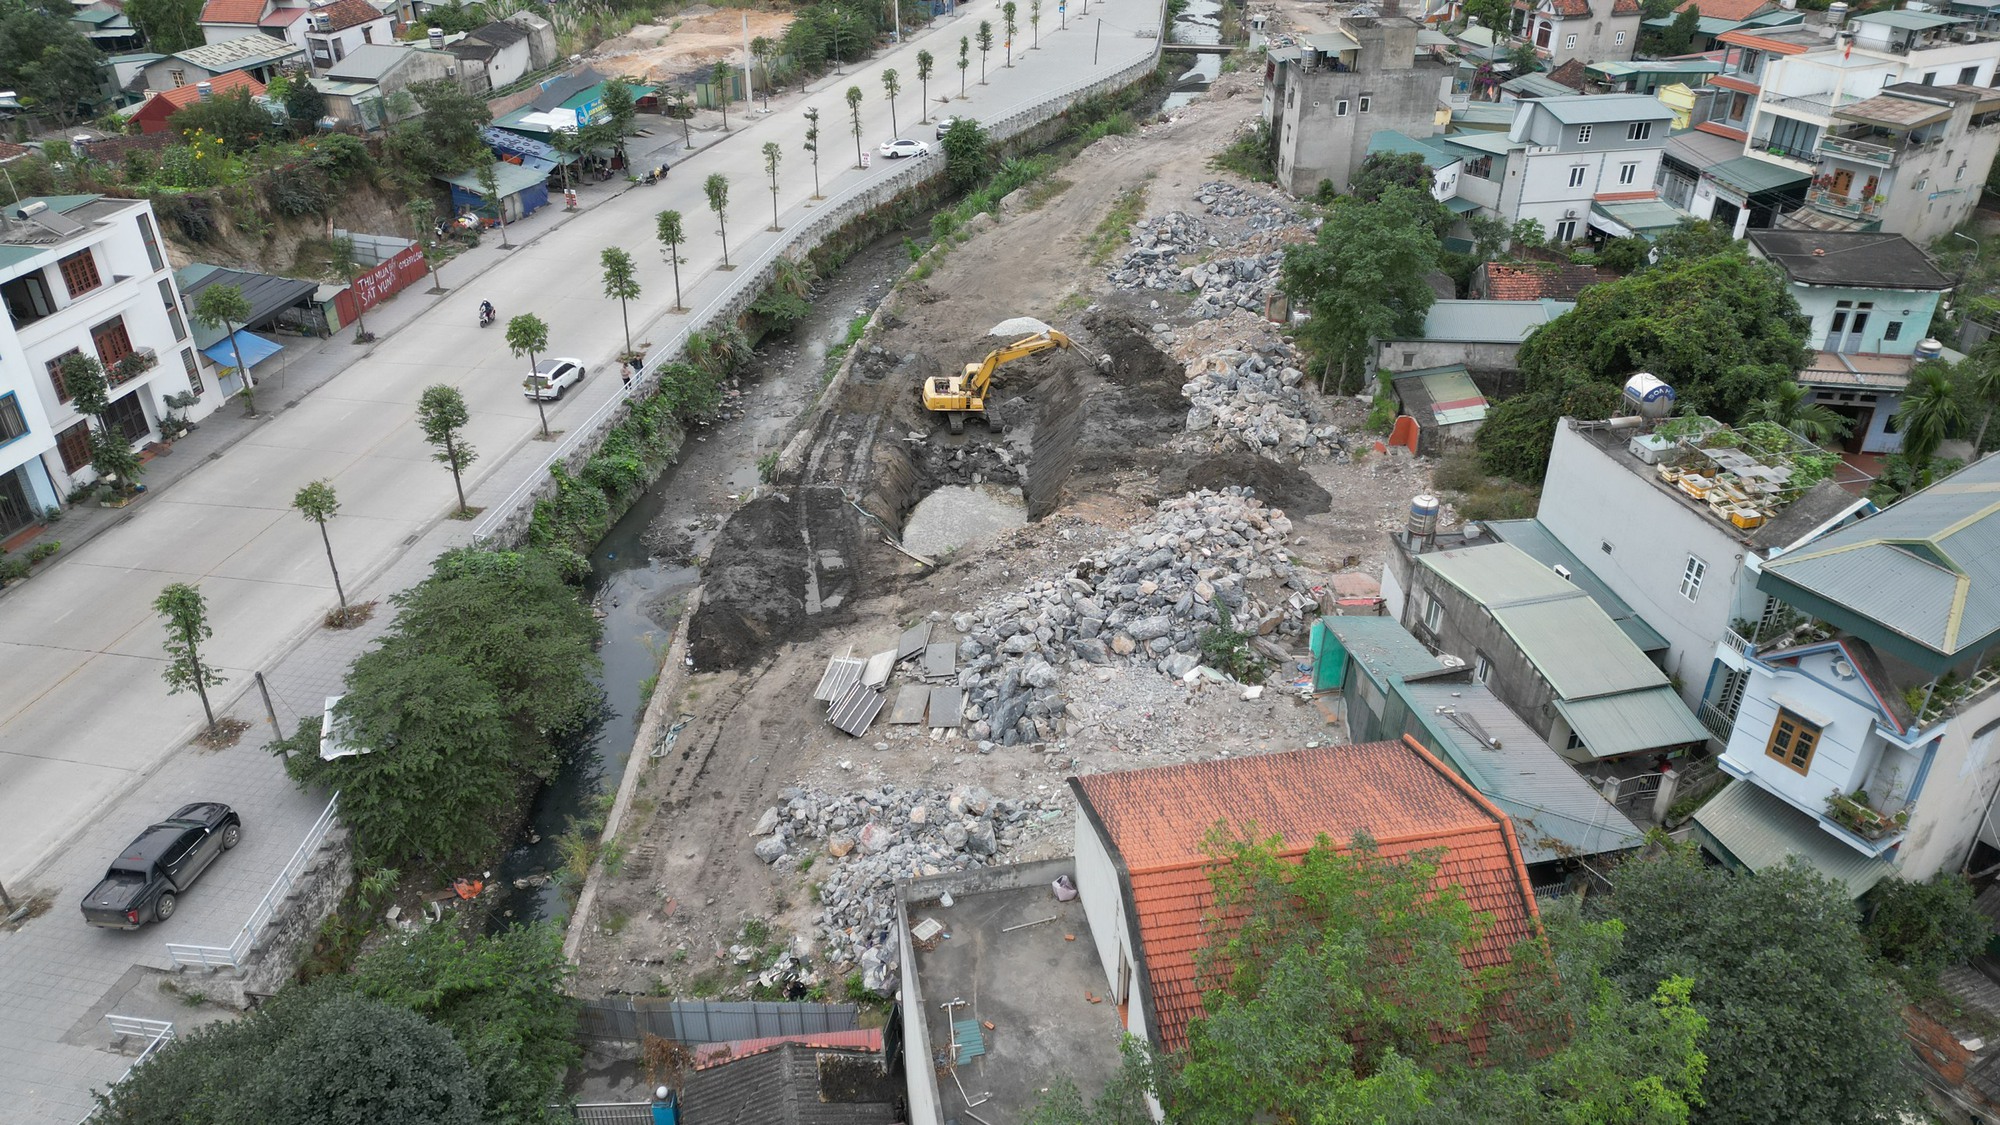 Quảng Ninh: Thi công đường "phớt lờ" an toàn giao thông và môi trường- Ảnh 1.